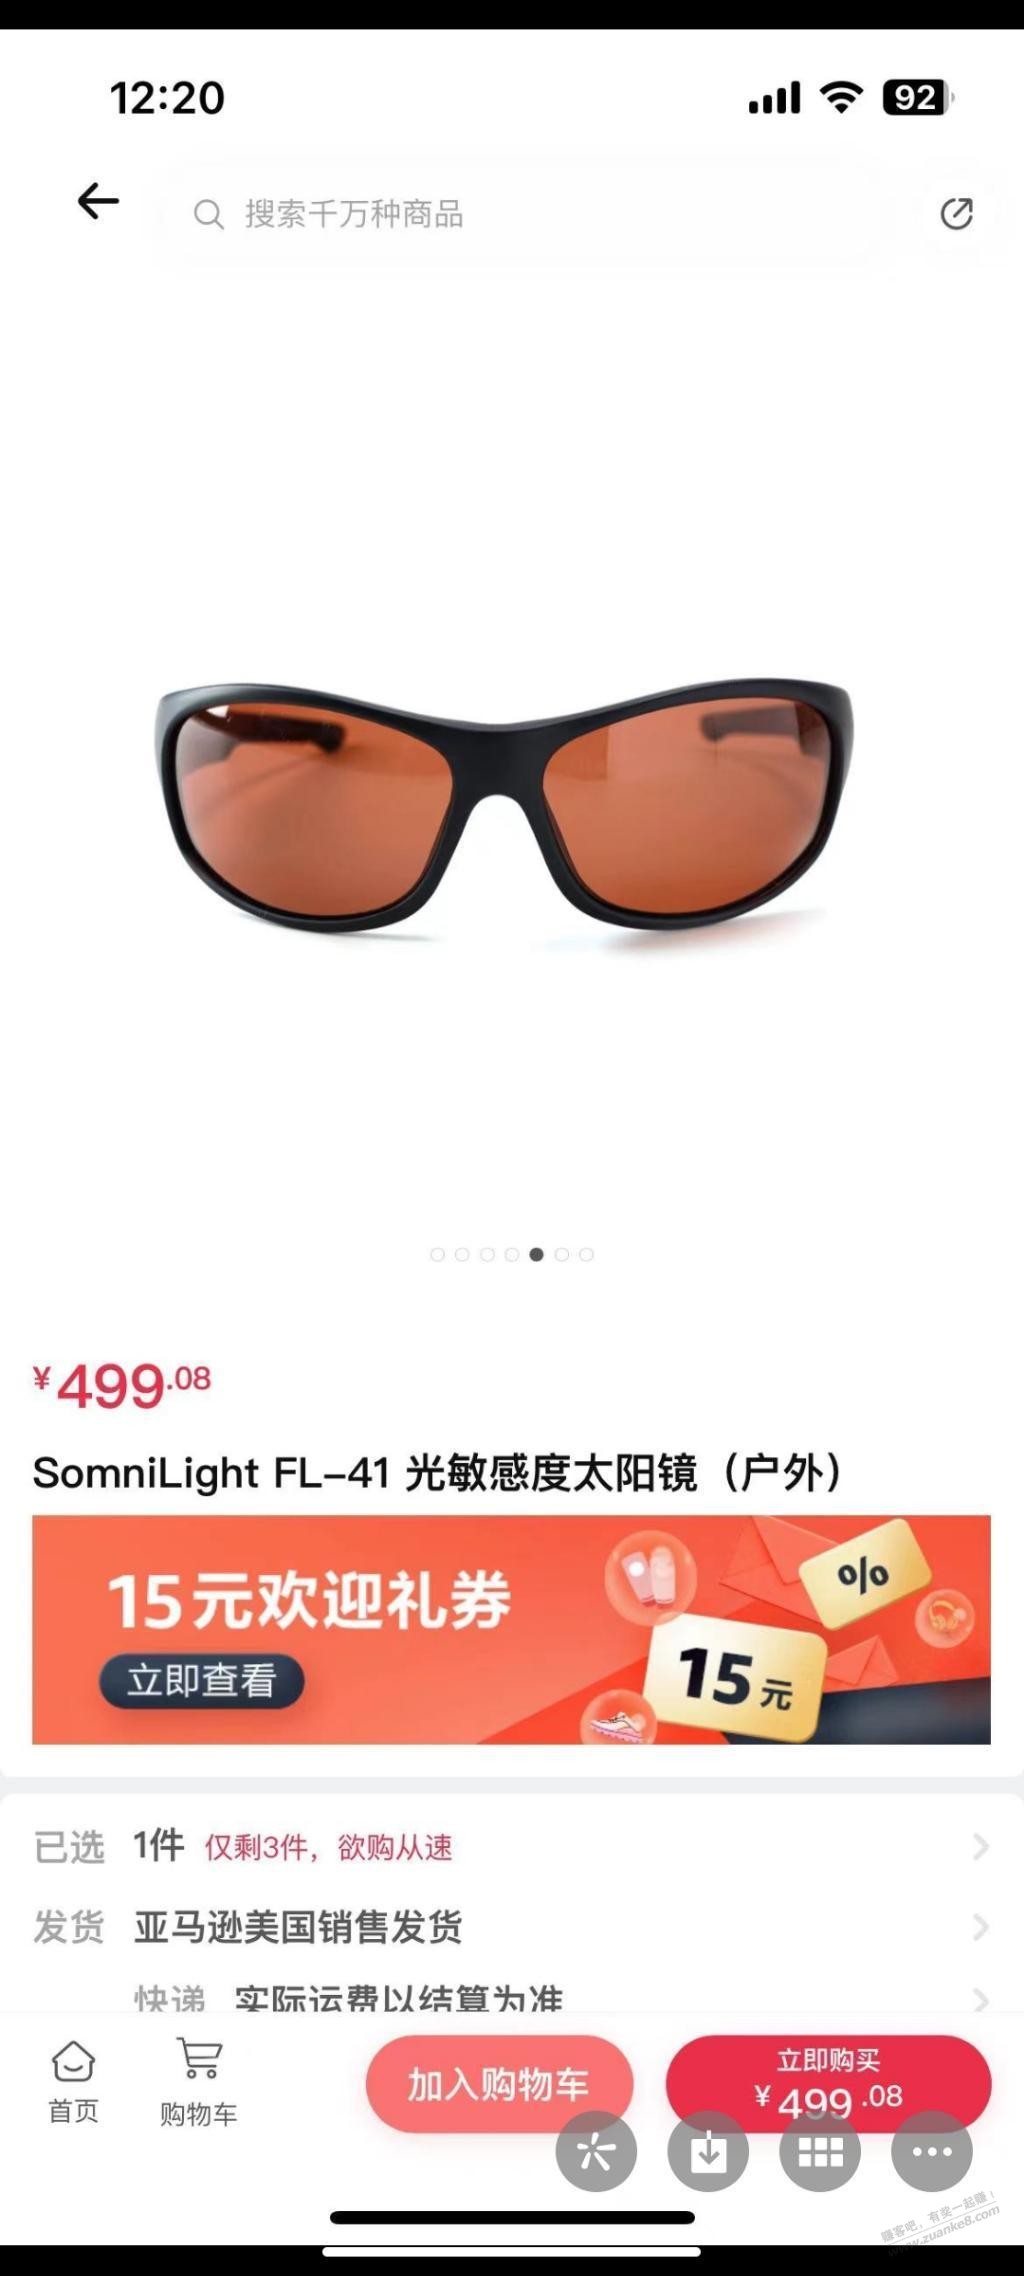 亚马逊买的眼镜咋是中国制造 被骗了